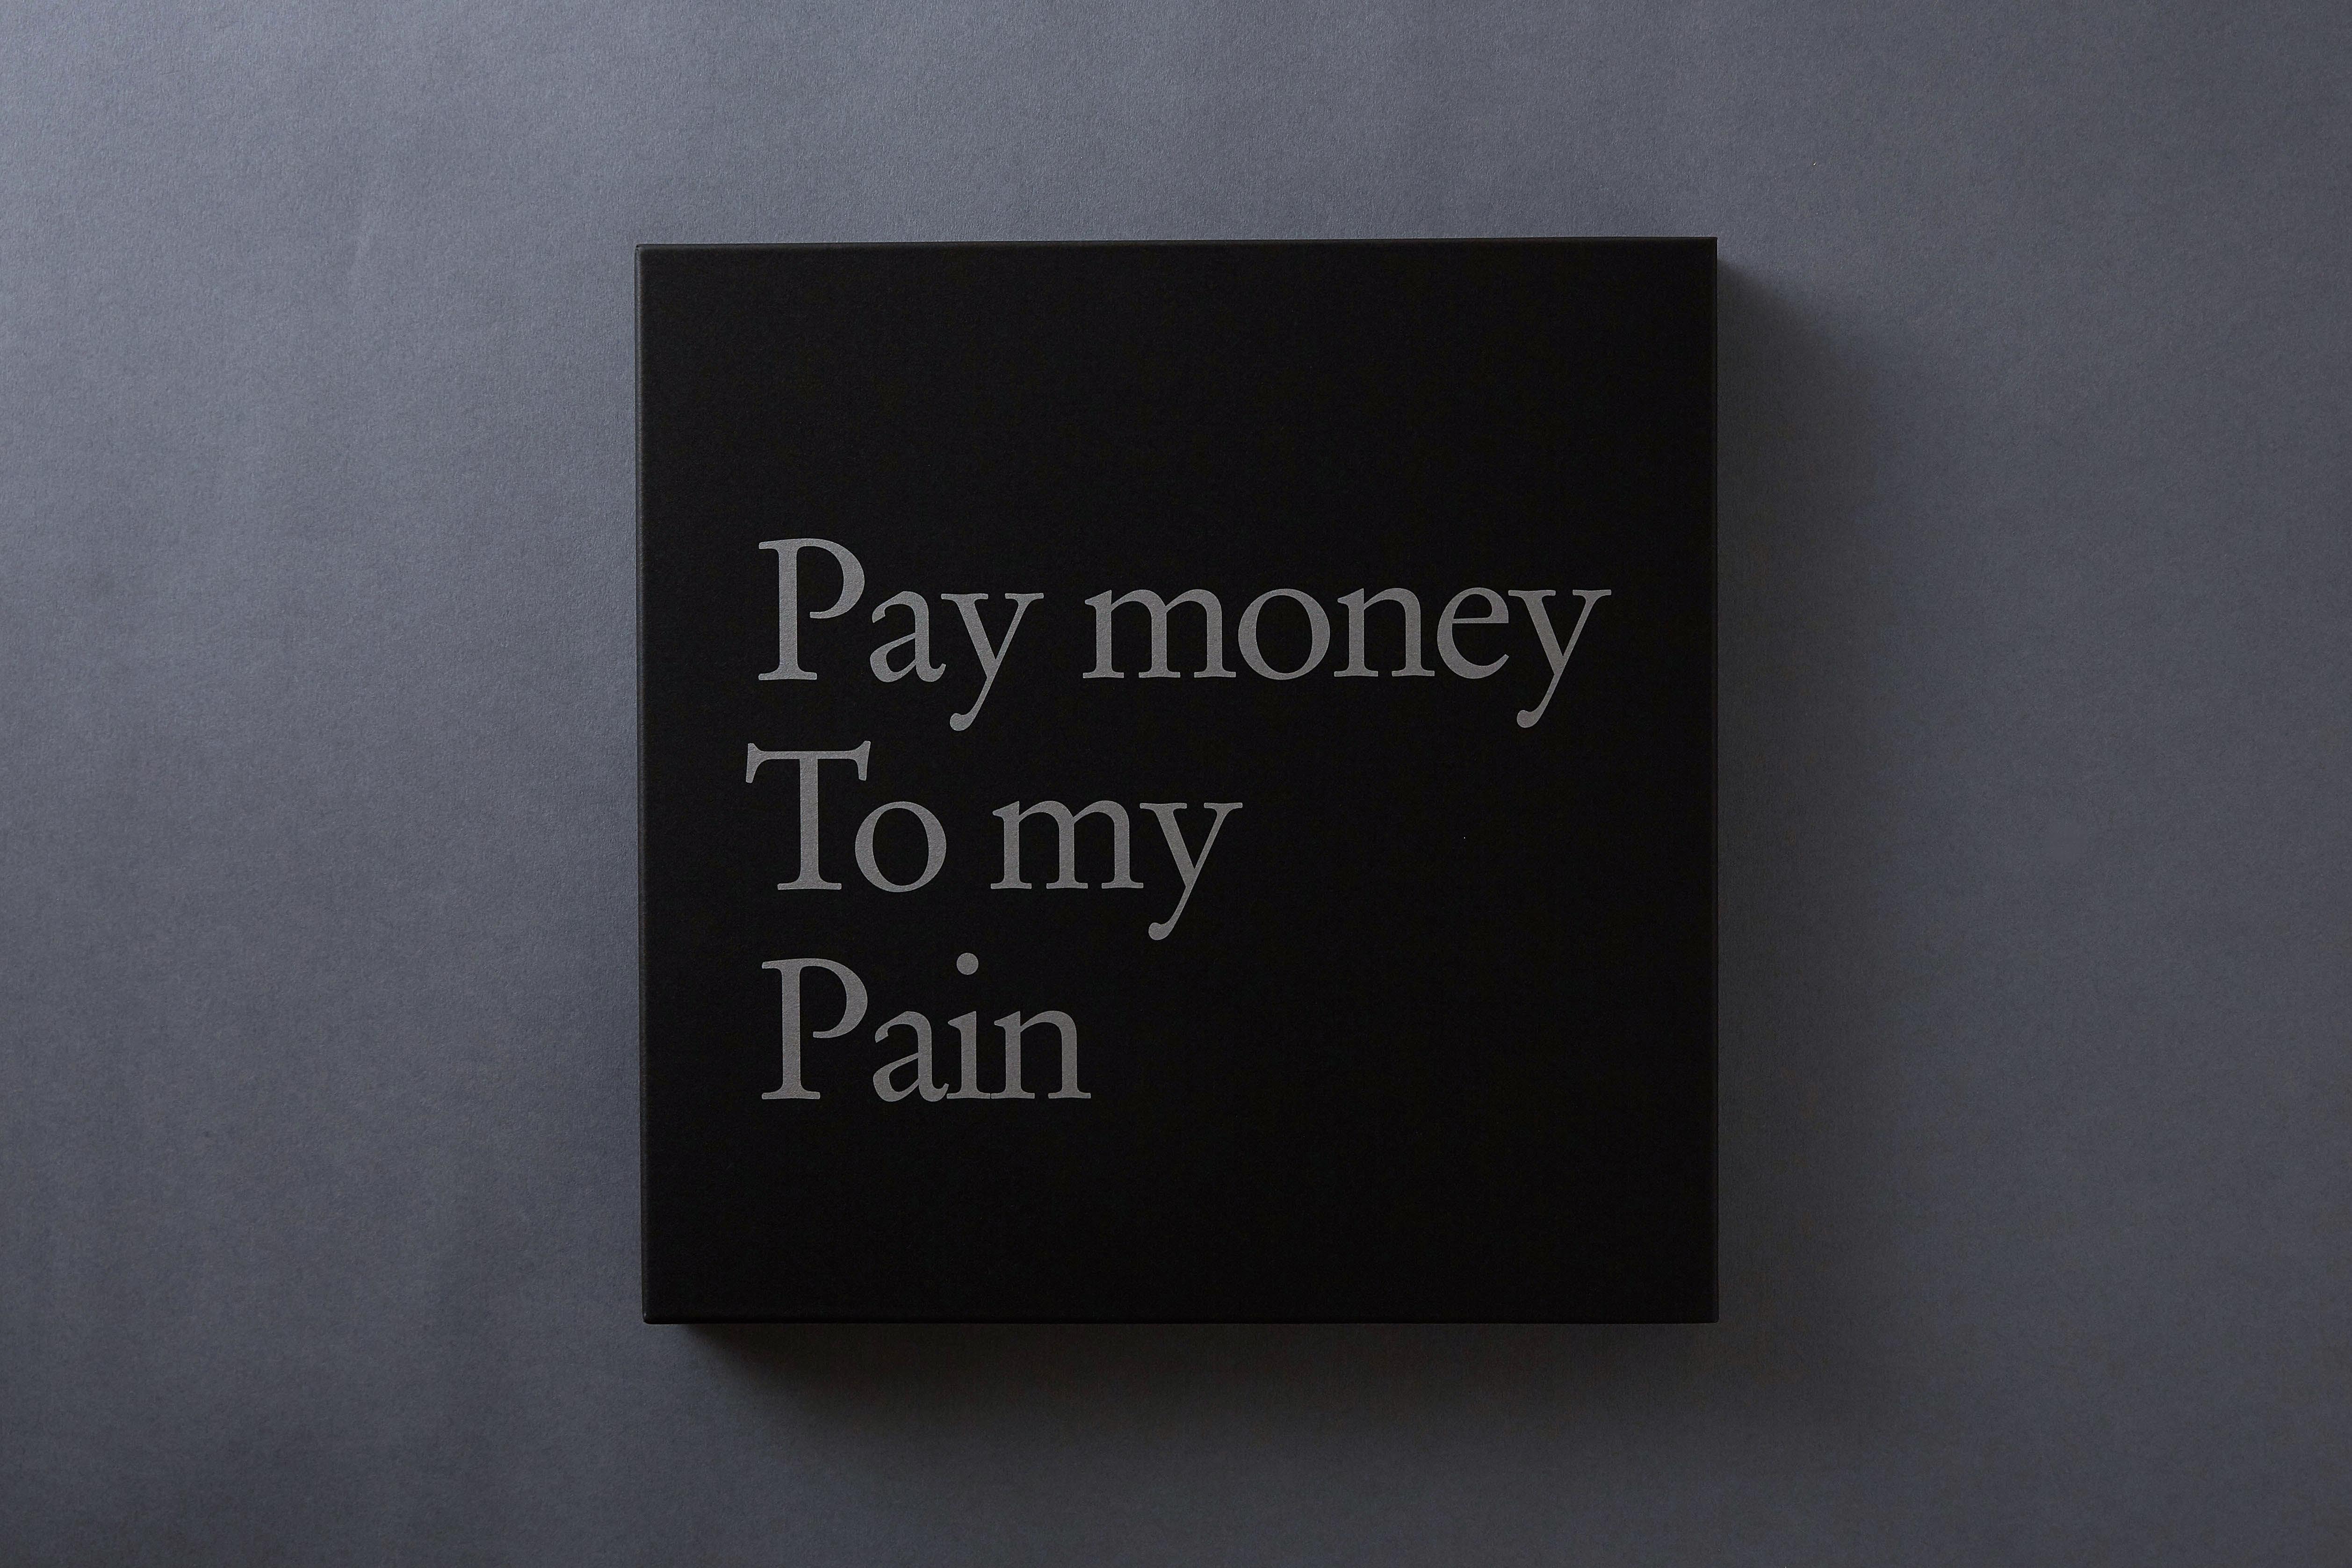 最新作の 邦楽 L SET BOX COMPLETE Pain my To money Pay 邦楽